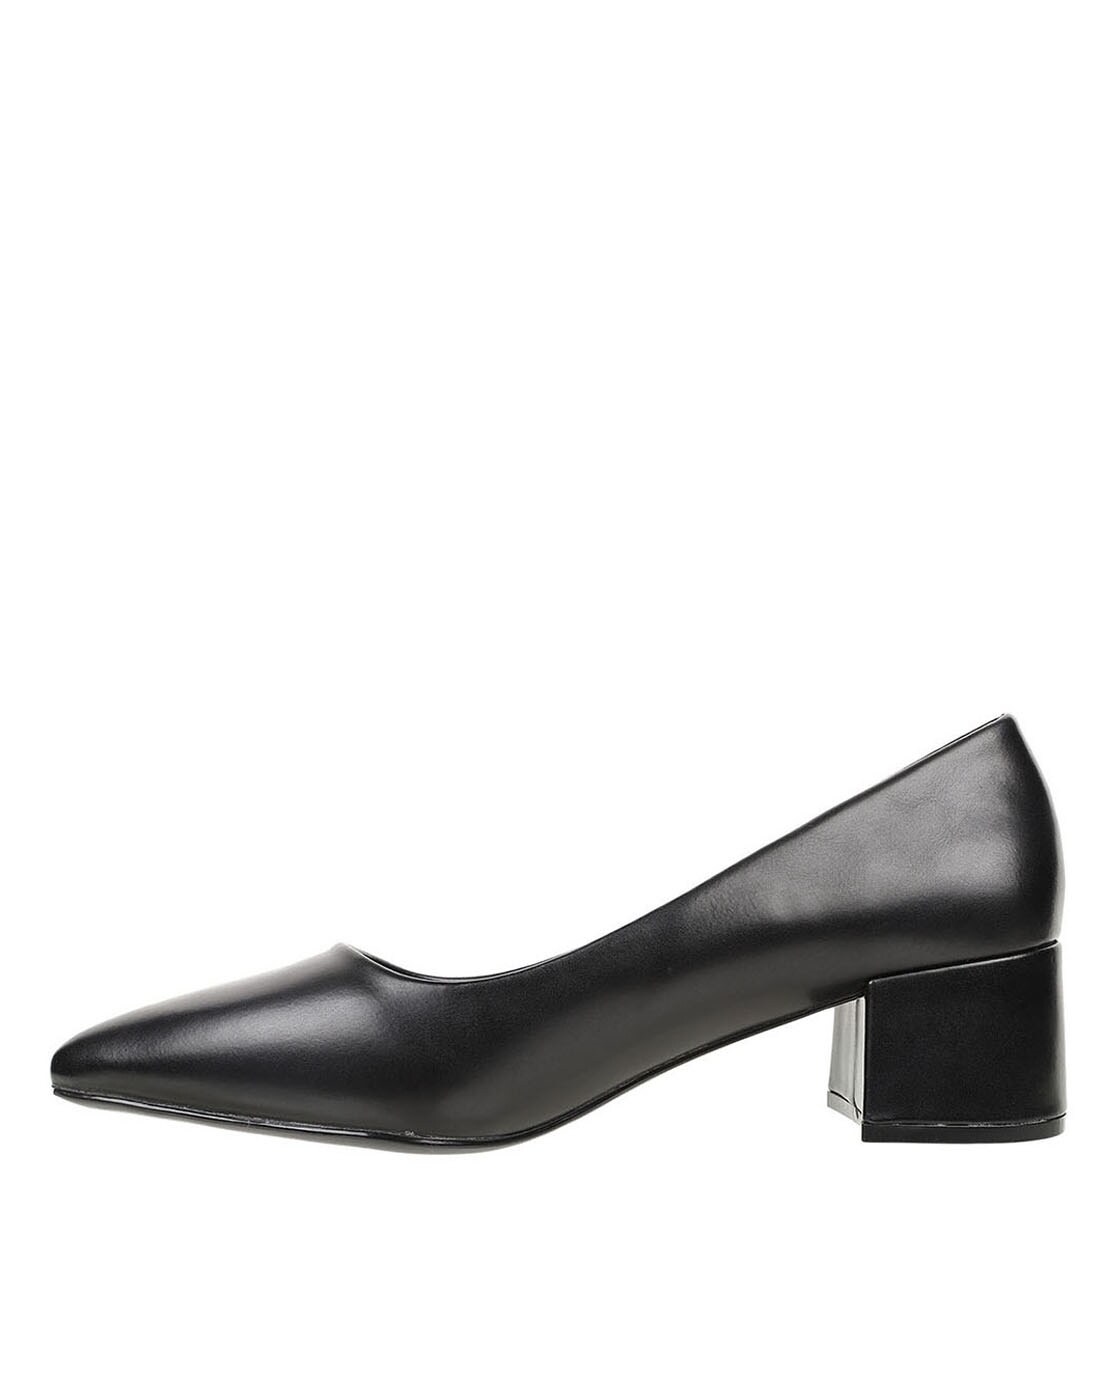 Buy Women Black Heels Online - 447479 | Van Heusen